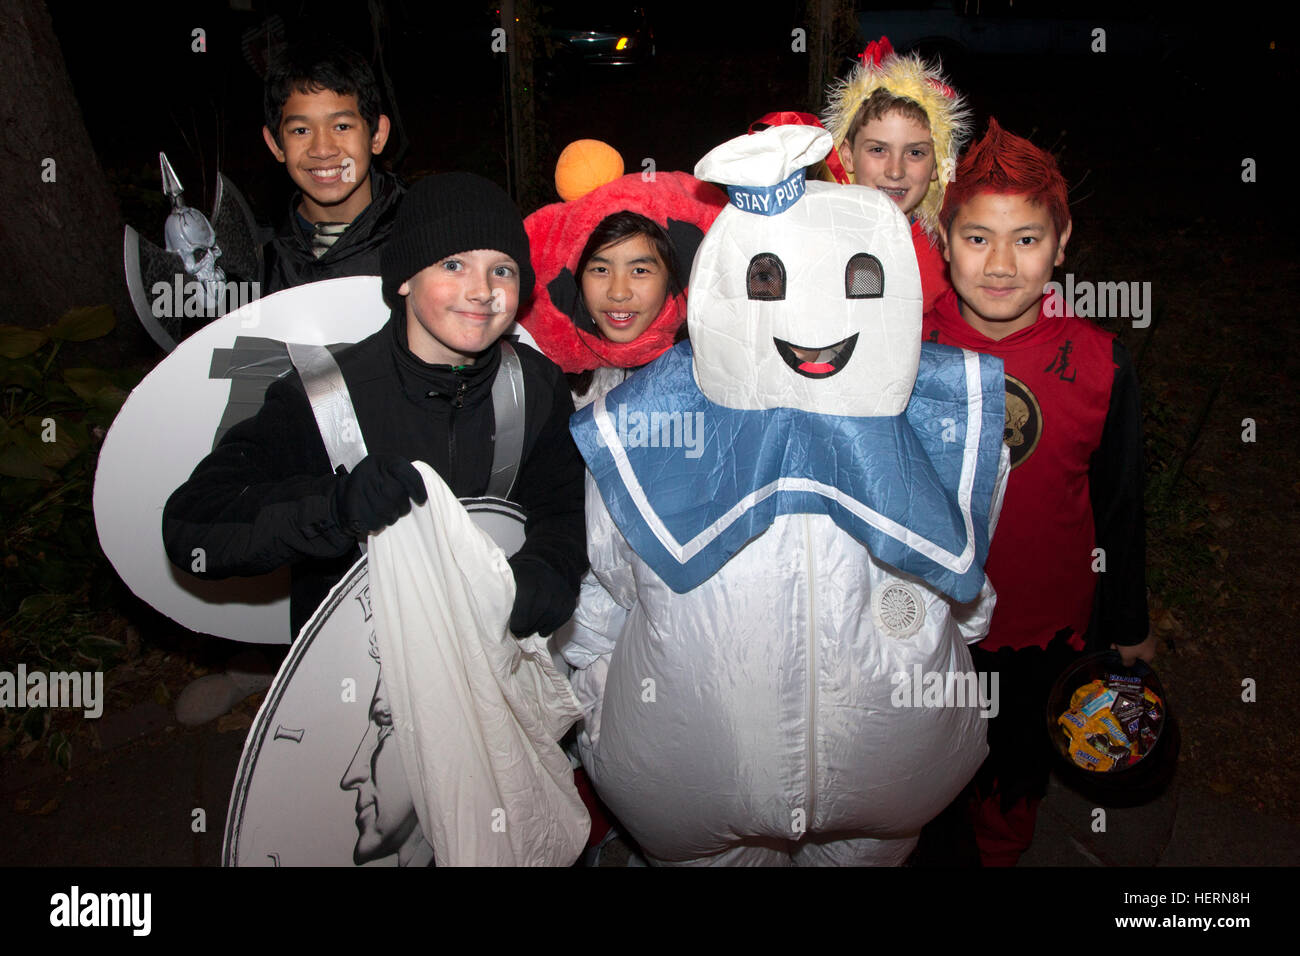 Halloween Stay Puft Marshmallow Mann Kostüm, asiatische & weiße junge  Teens, Trick und Behandlung. St Paul Minnesota MN USA Stockfotografie -  Alamy